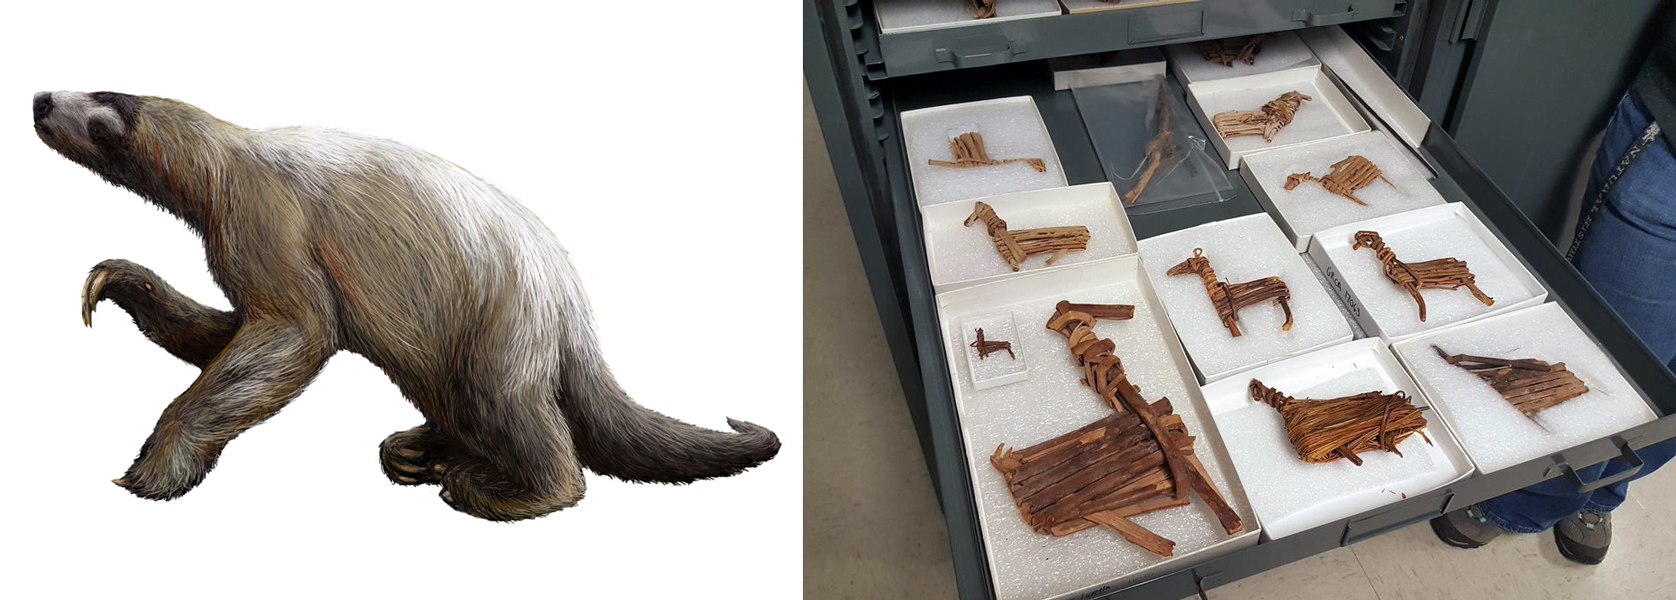 グランドキャニオンの歴史を示唆する2つの画像があります。 左は、かつてアメリカ西部を闊歩していた絶滅種のシャスタ・グランド・ナマケモノ（Nothrotheriops shastensis）を描いたイラスト。